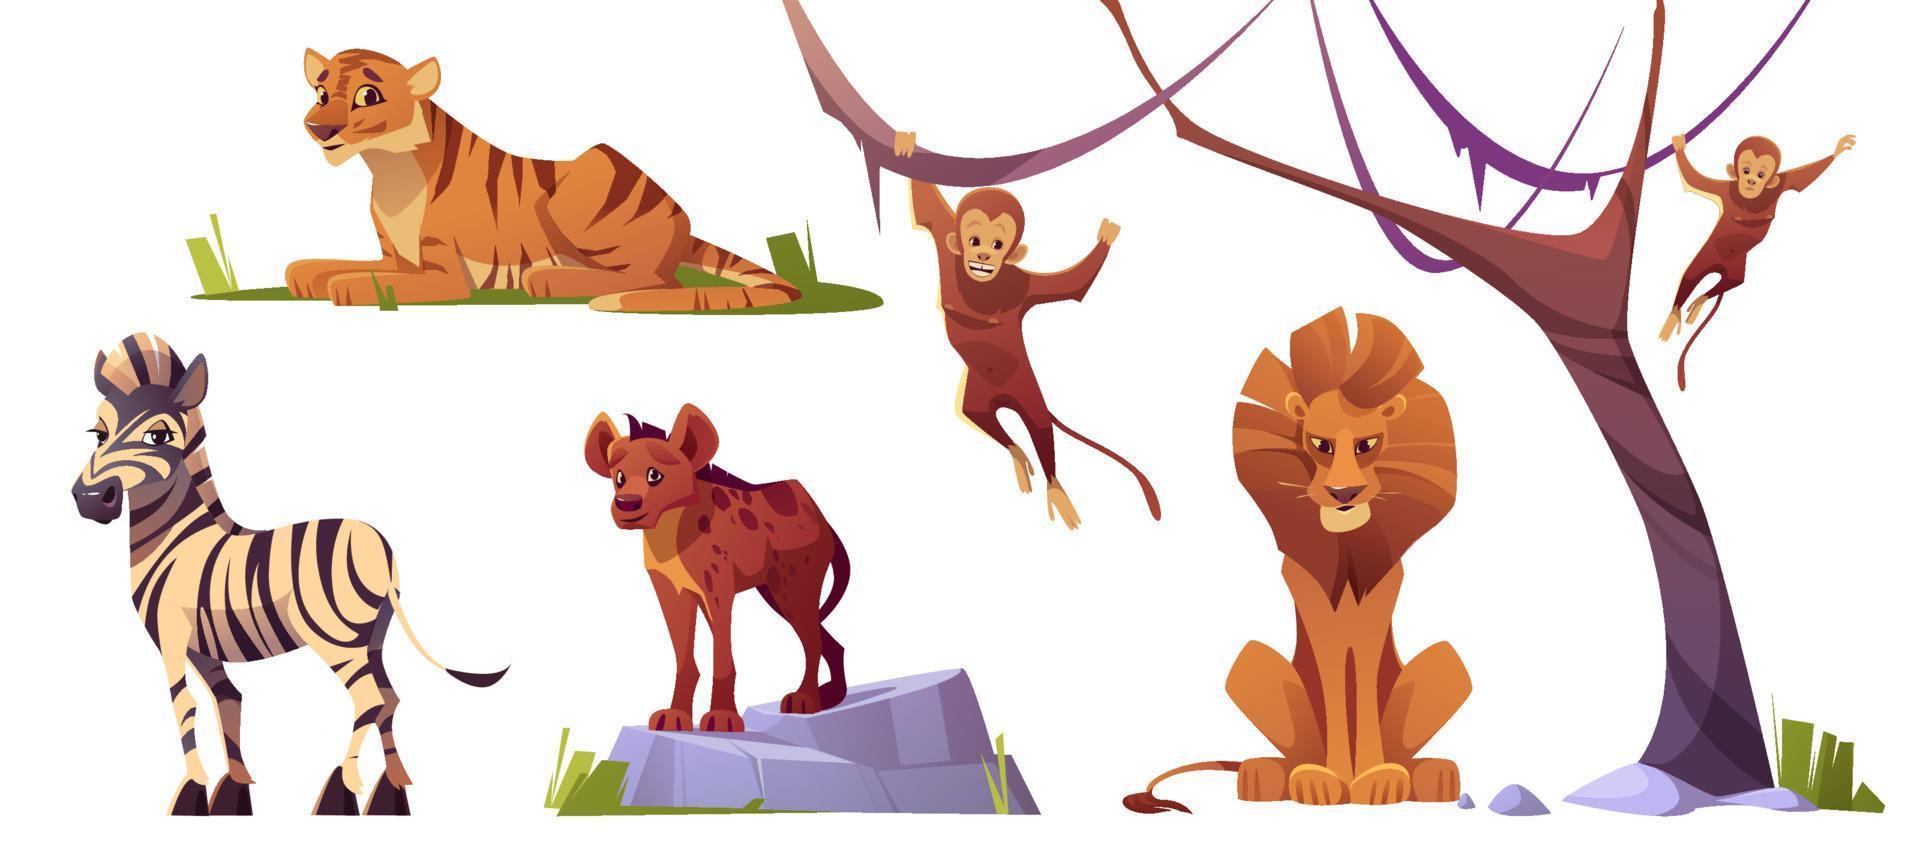 tigre de animais selvagens dos desenhos animados, macacos, leão, hiena vetor